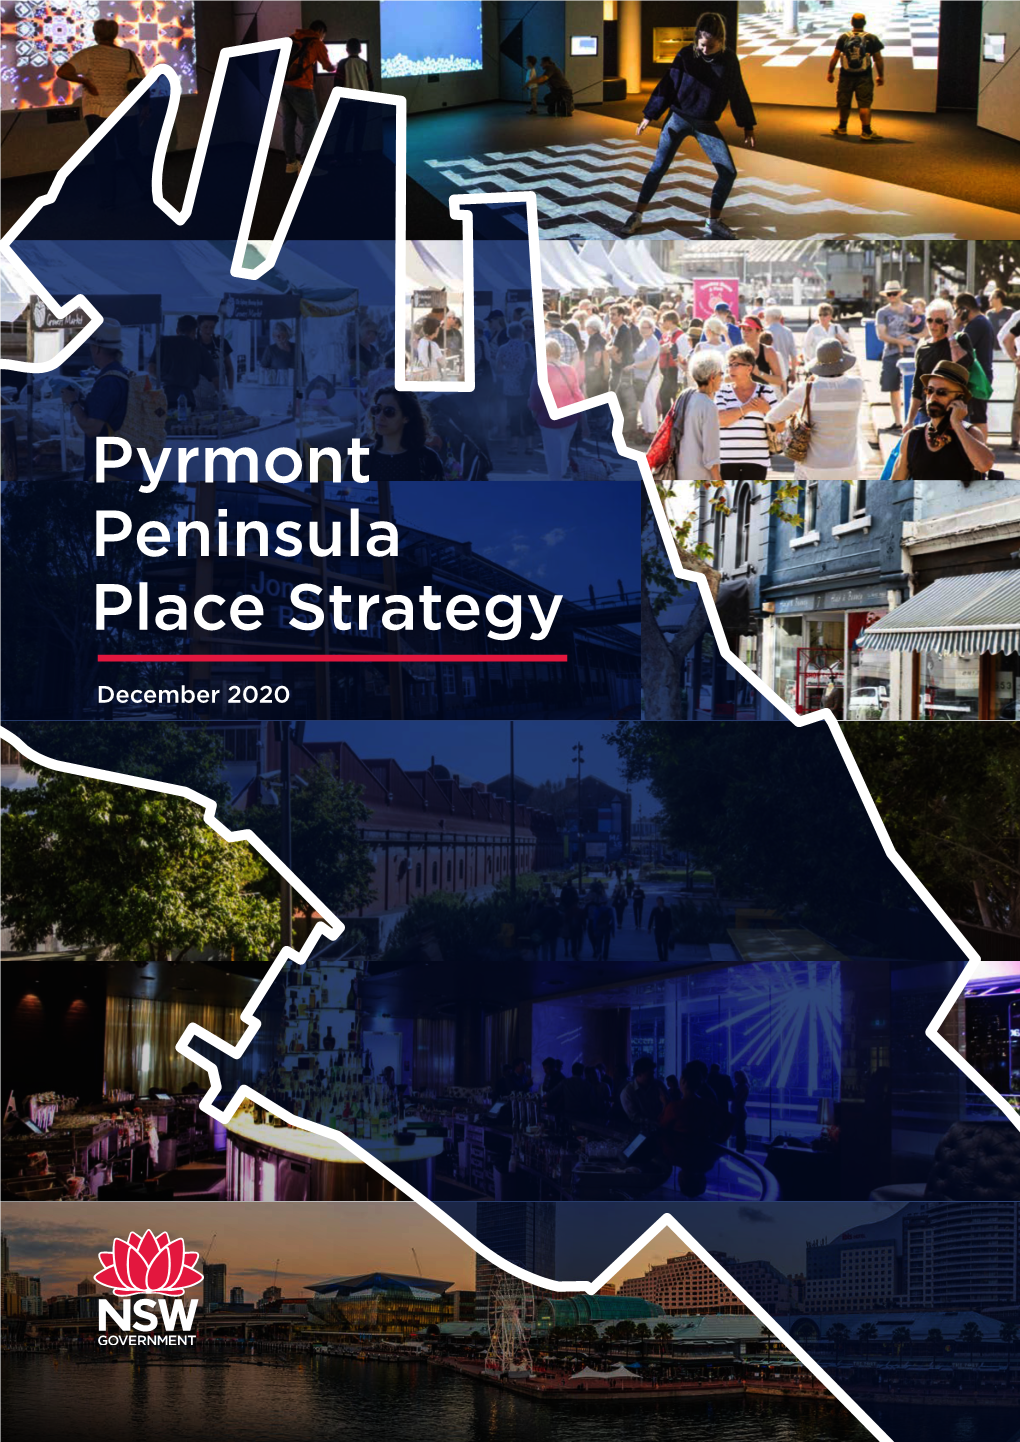 Pyrmont Peninsula Place Strategy